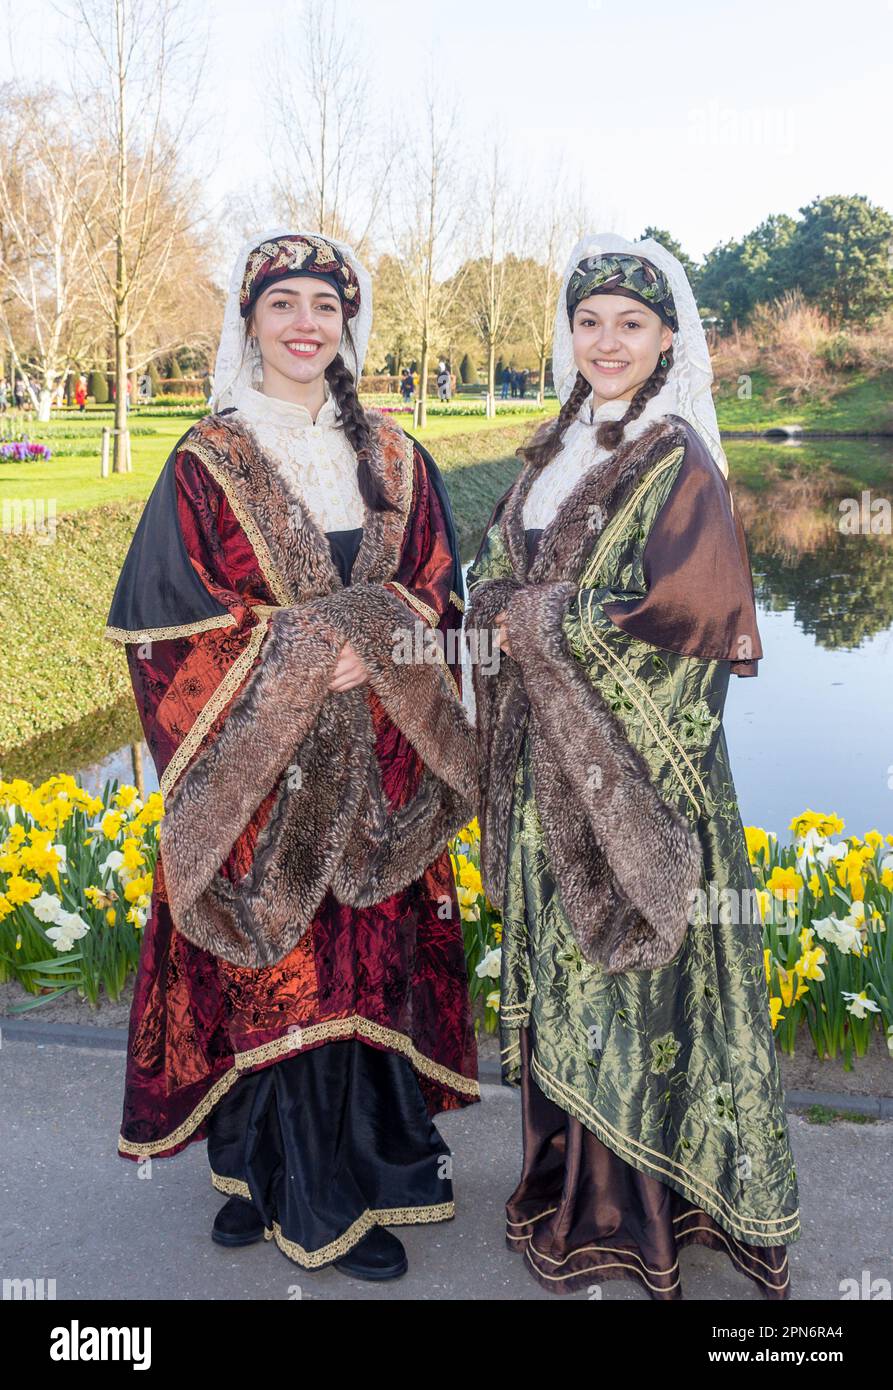 Junge Frauen in traditionellen Kostümen am Eingang, Gartenanlage Keukenhof, Lisse, Südholland (Zuid-Holland), Königreich der Niederlande Stockfoto